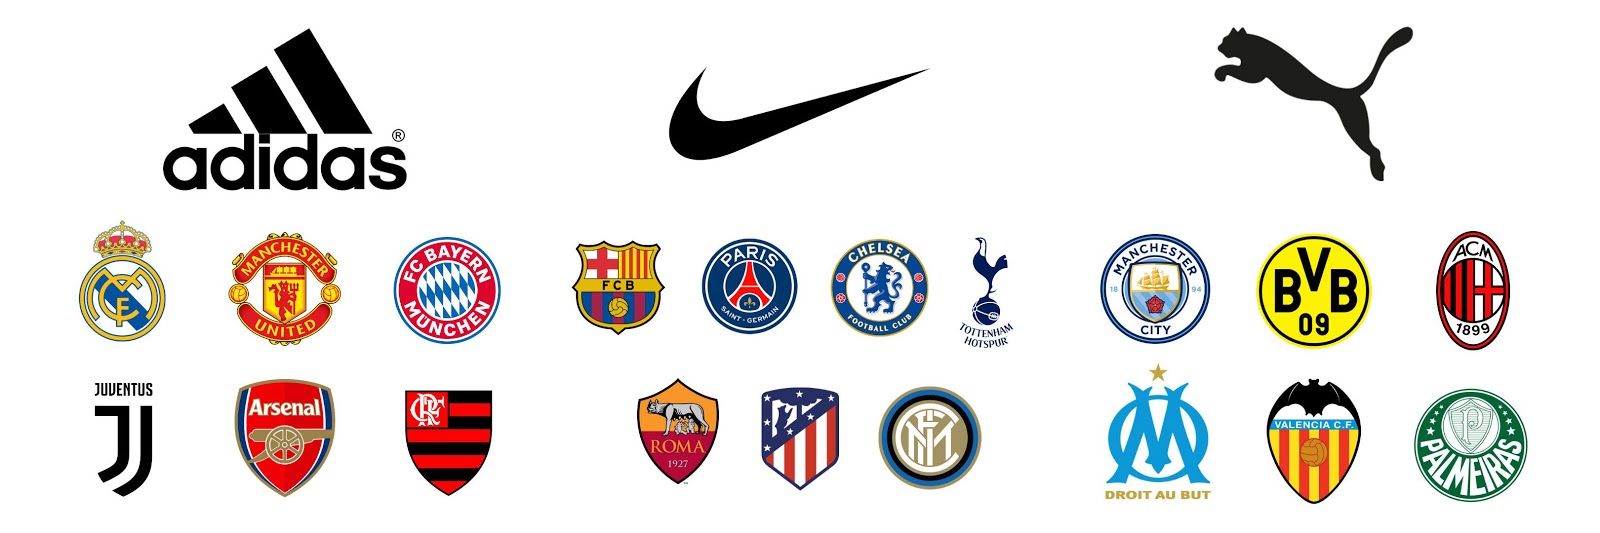 adidas sponsored football teams